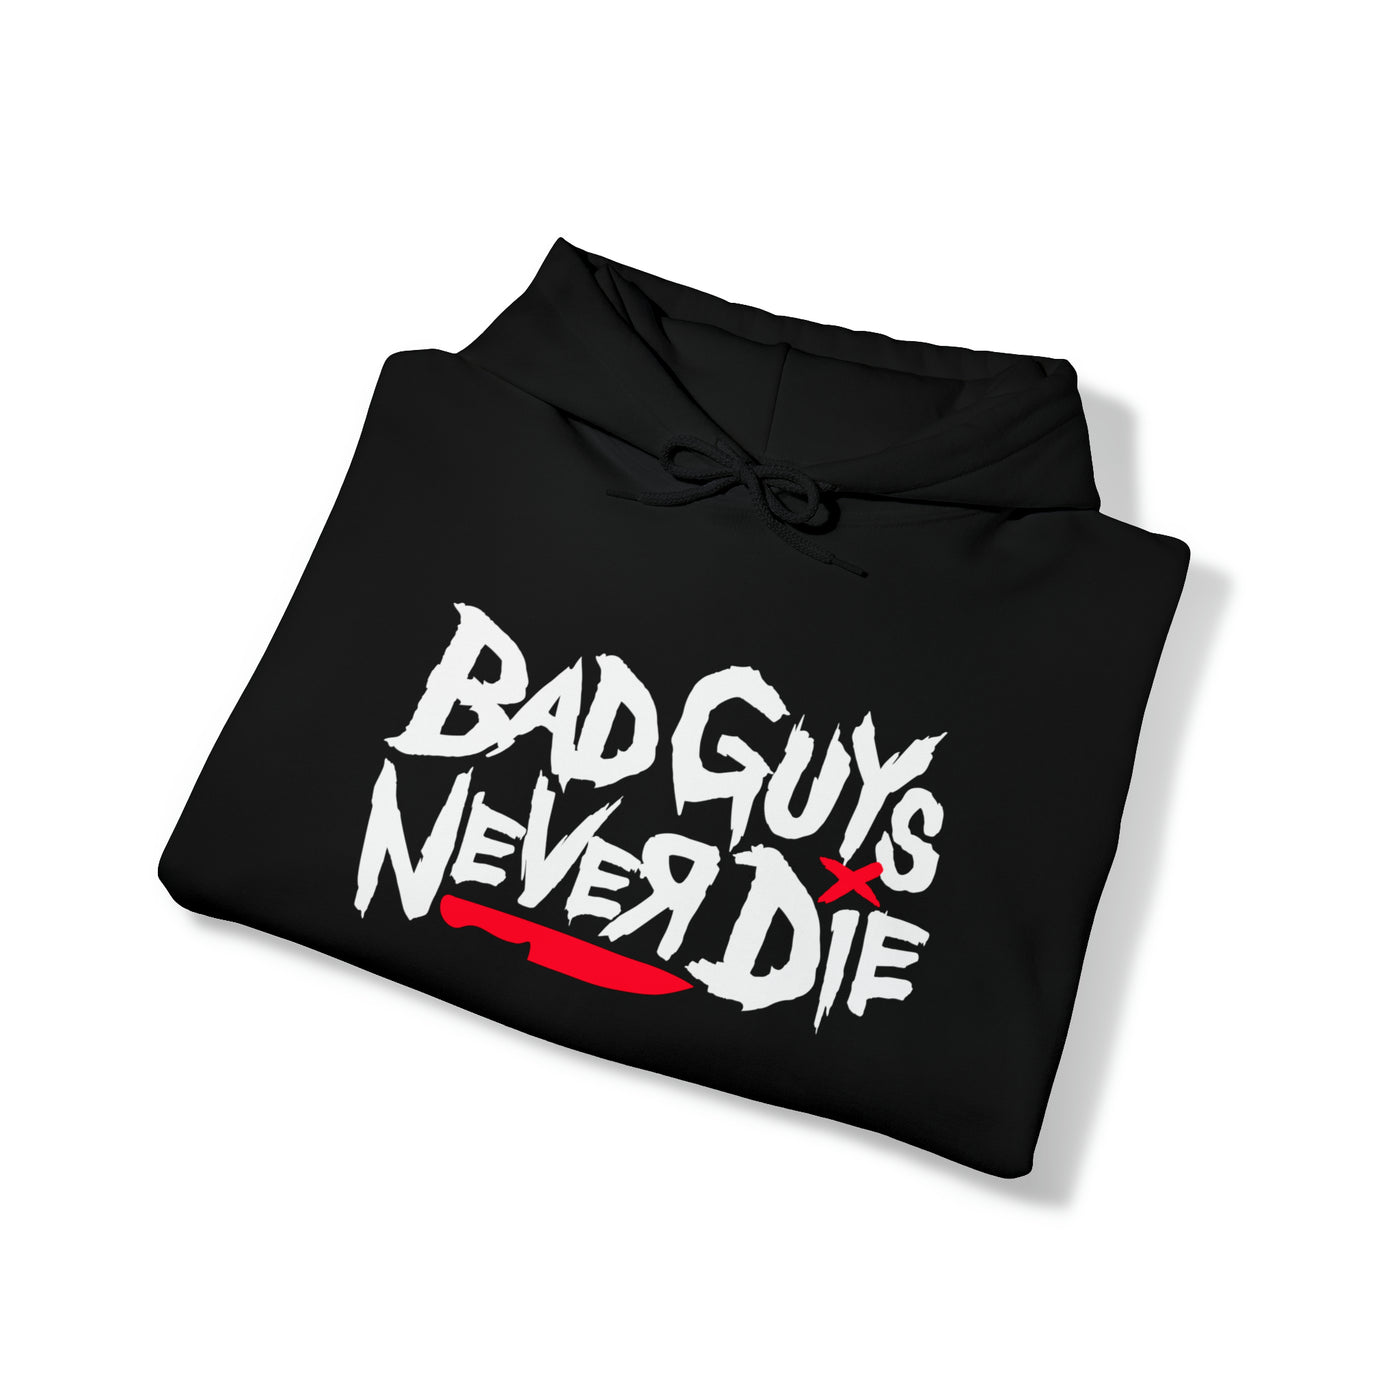 Bad Guys Never Die Pullover Hoodie - Men's